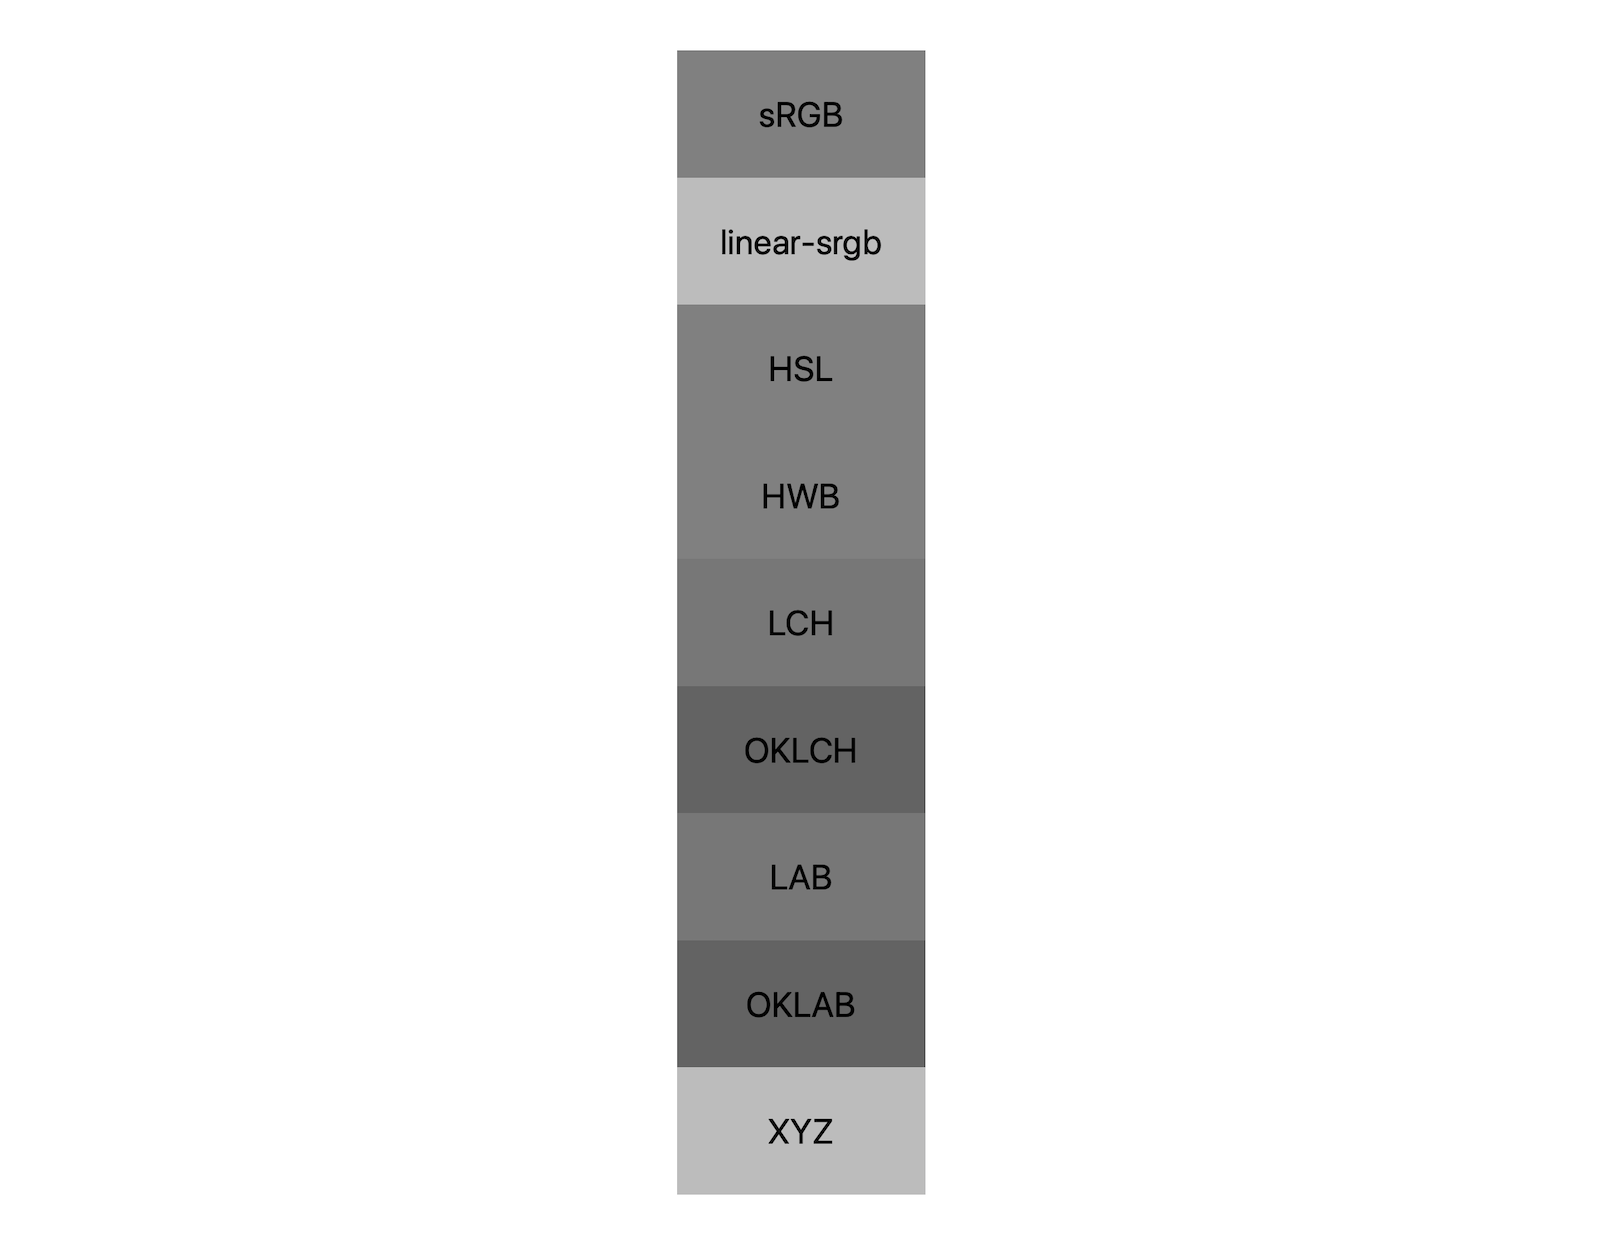 7 renk alanının (srgb, linear-srgb, lch, oklch, lab, oklab, xyz) her biri siyah ve beyazın birlikte karıştırılmasıyla elde edilen sonuçları gösterir. Her bir renk alanının bir griye farklı şekilde karıştırılacağını gösteren yaklaşık 5 farklı renk tonu gösterilmektedir.